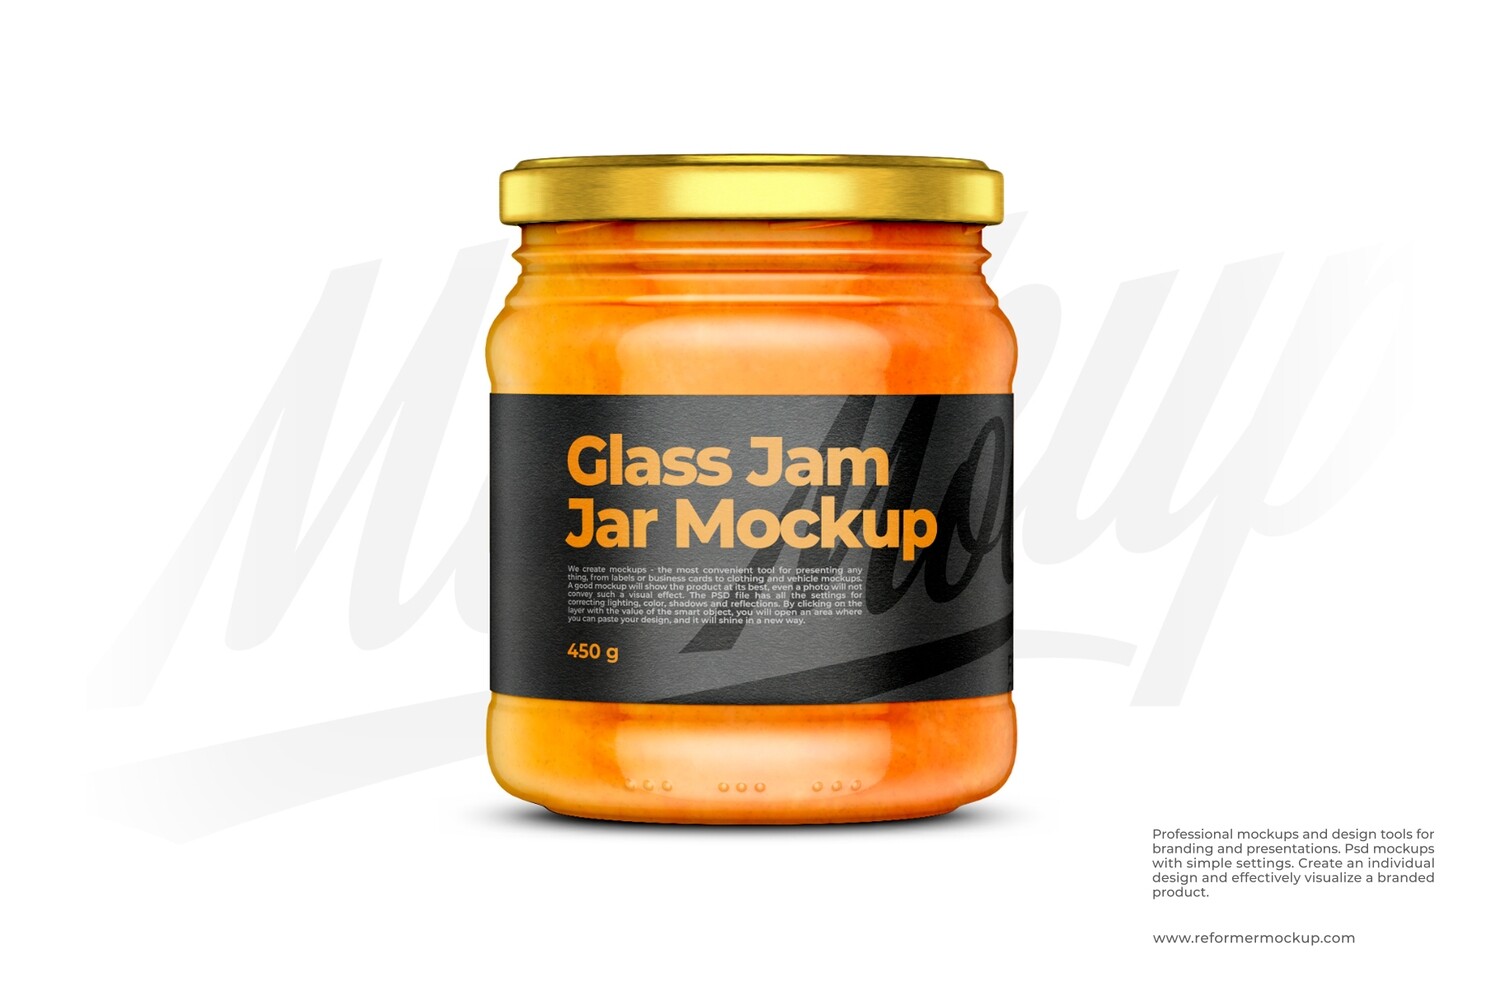 Glass Jam Jar Mockup